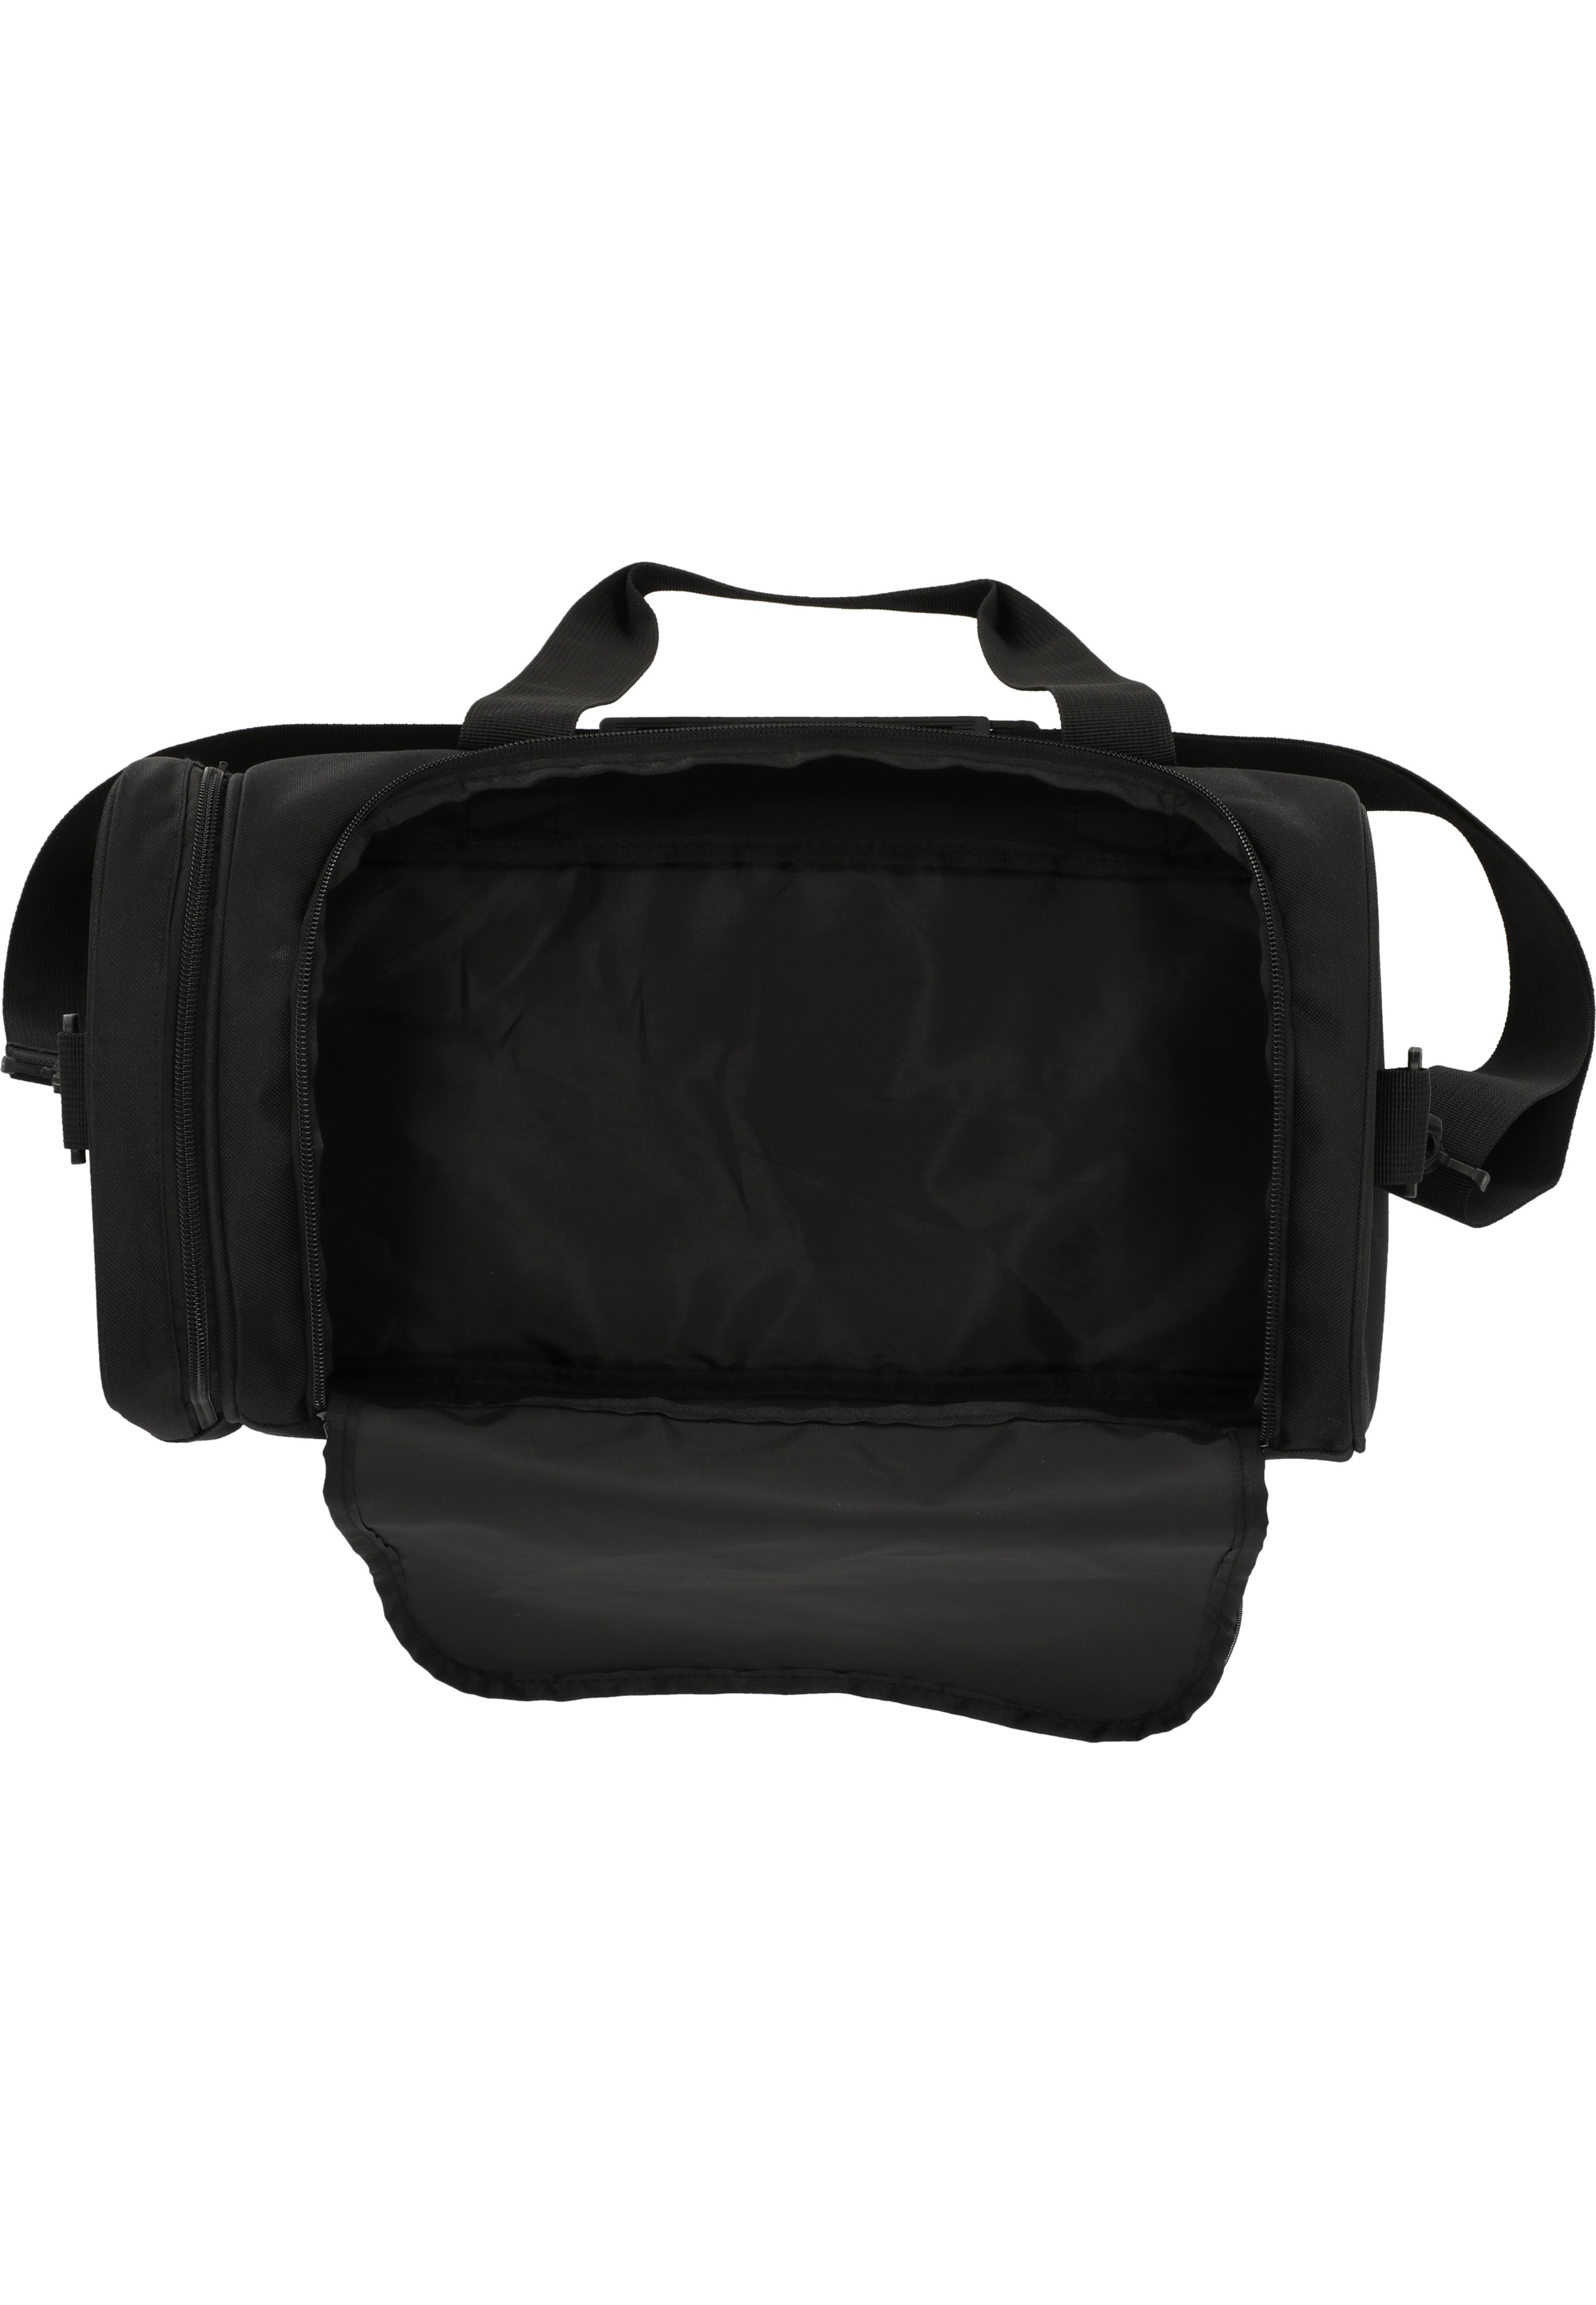 ENDURANCE Sporttasche »Lanakila«, im vielseitigen Design für Sport, Reisen und mehr